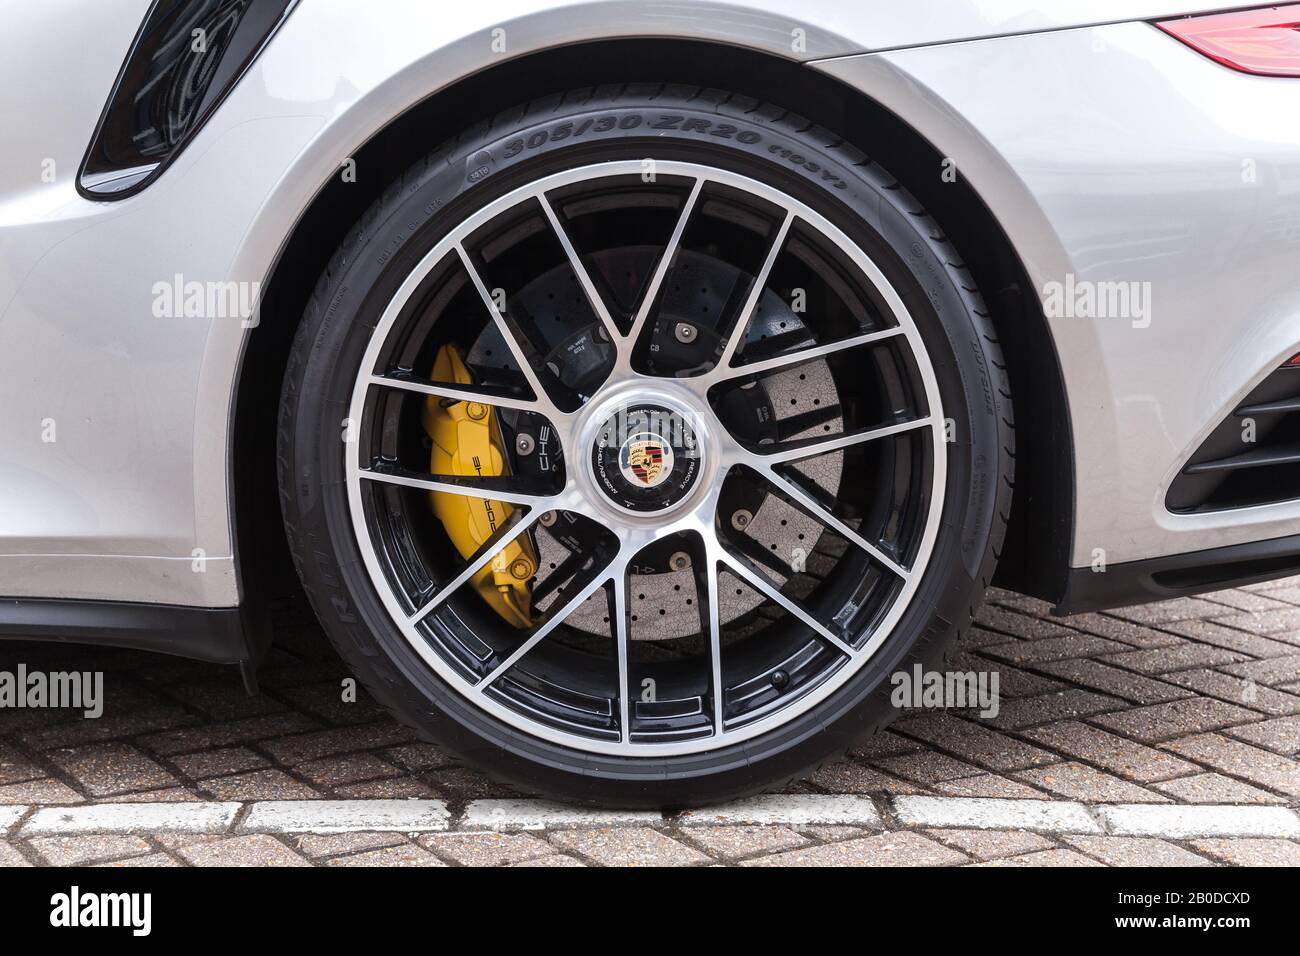 San Pietroburgo, Russia - 24 aprile 2019: Frammento Porsche argento metallico, ruota posteriore su pneumatico Pirelli, foto di primo piano Foto Stock